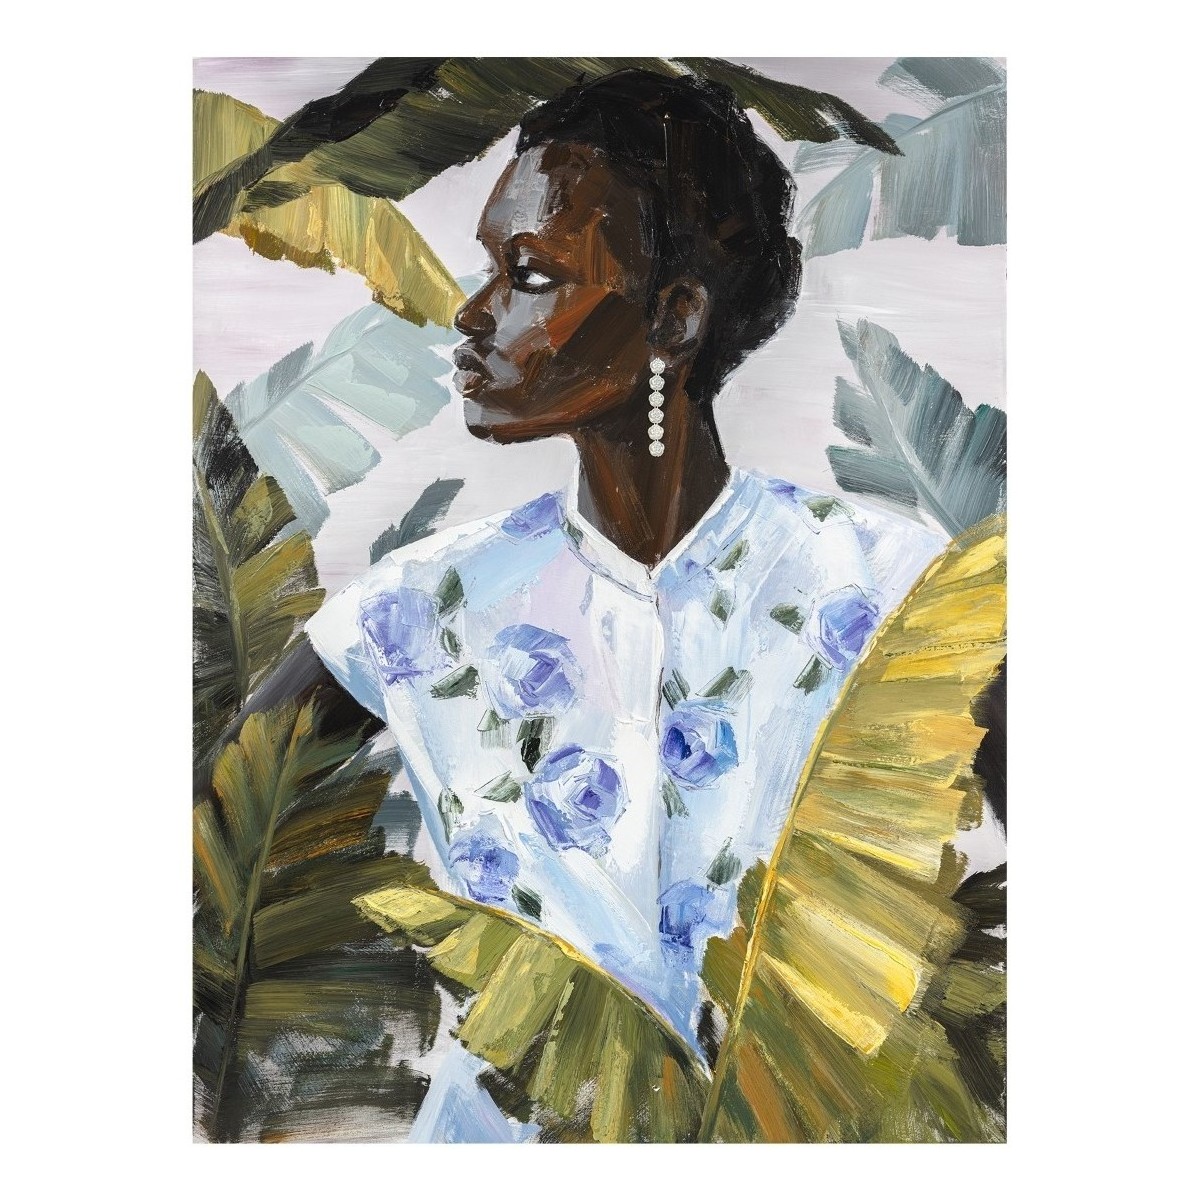 Σπίτι Πίνακες Signes Grimalt Αφρικανική Ζωγραφική Γυναίκα Black